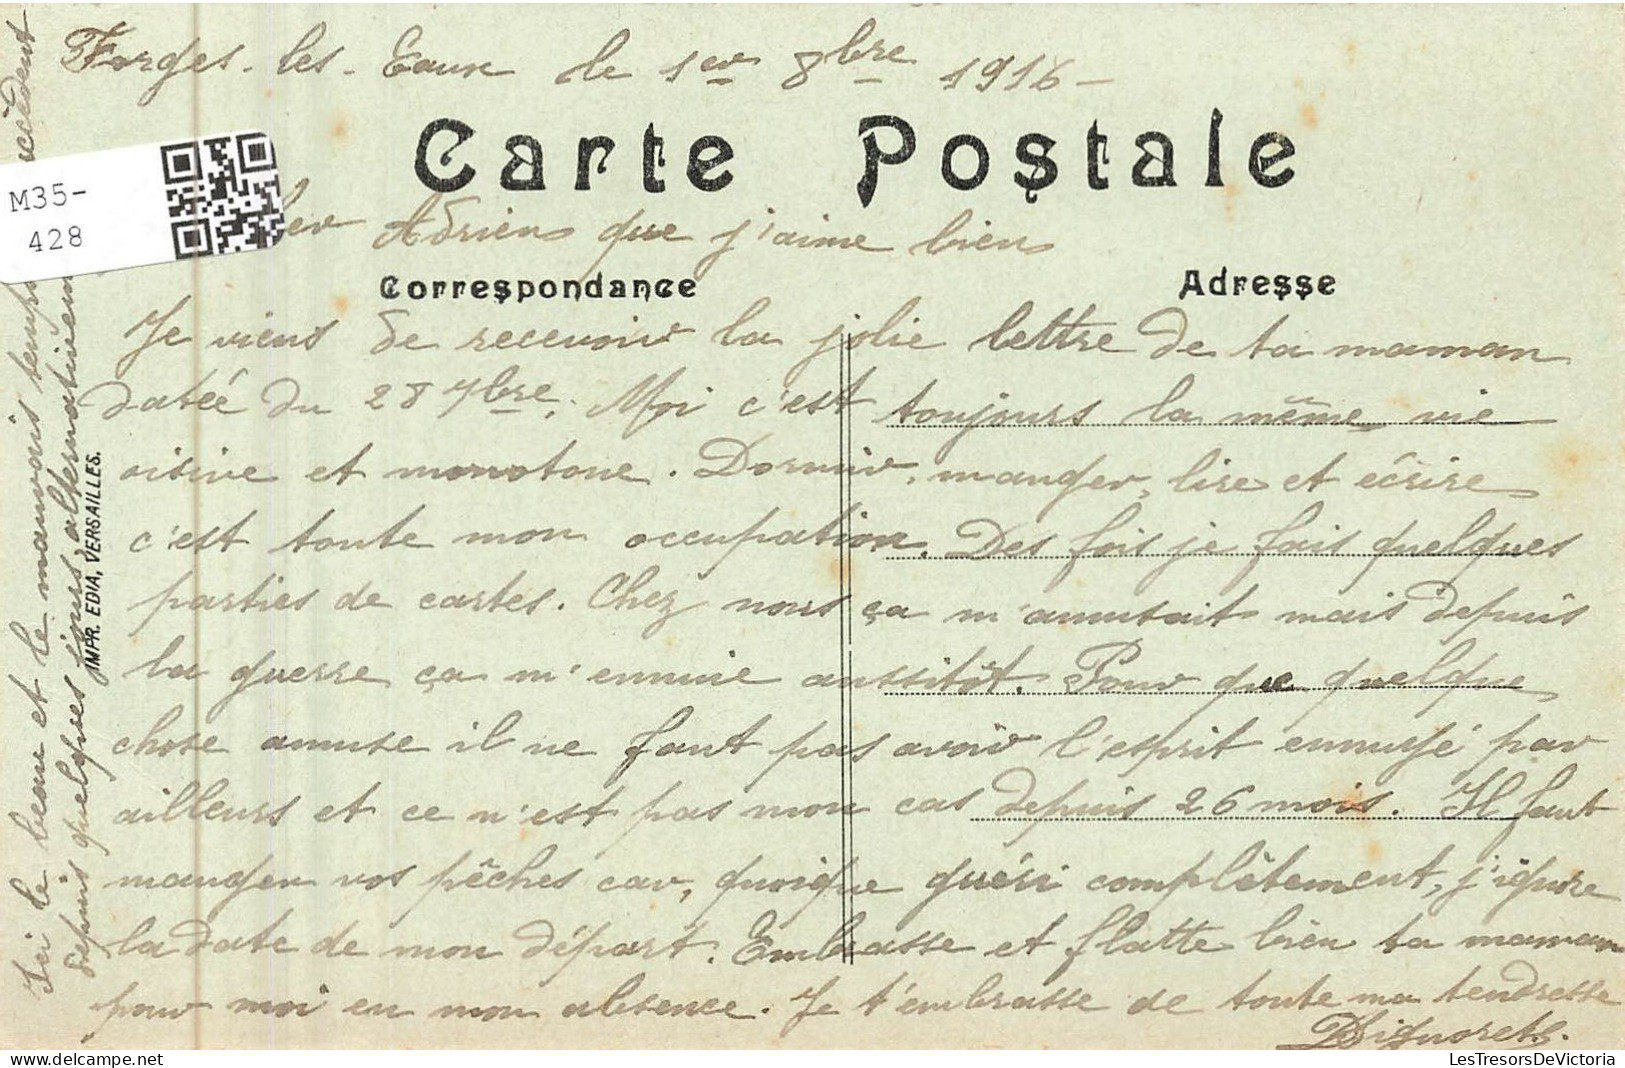 FRANCE - Environs De Forges Les Eaux - Vue Générale Du Château Du Fossé -  Carte Postale Ancienne - Forges Les Eaux